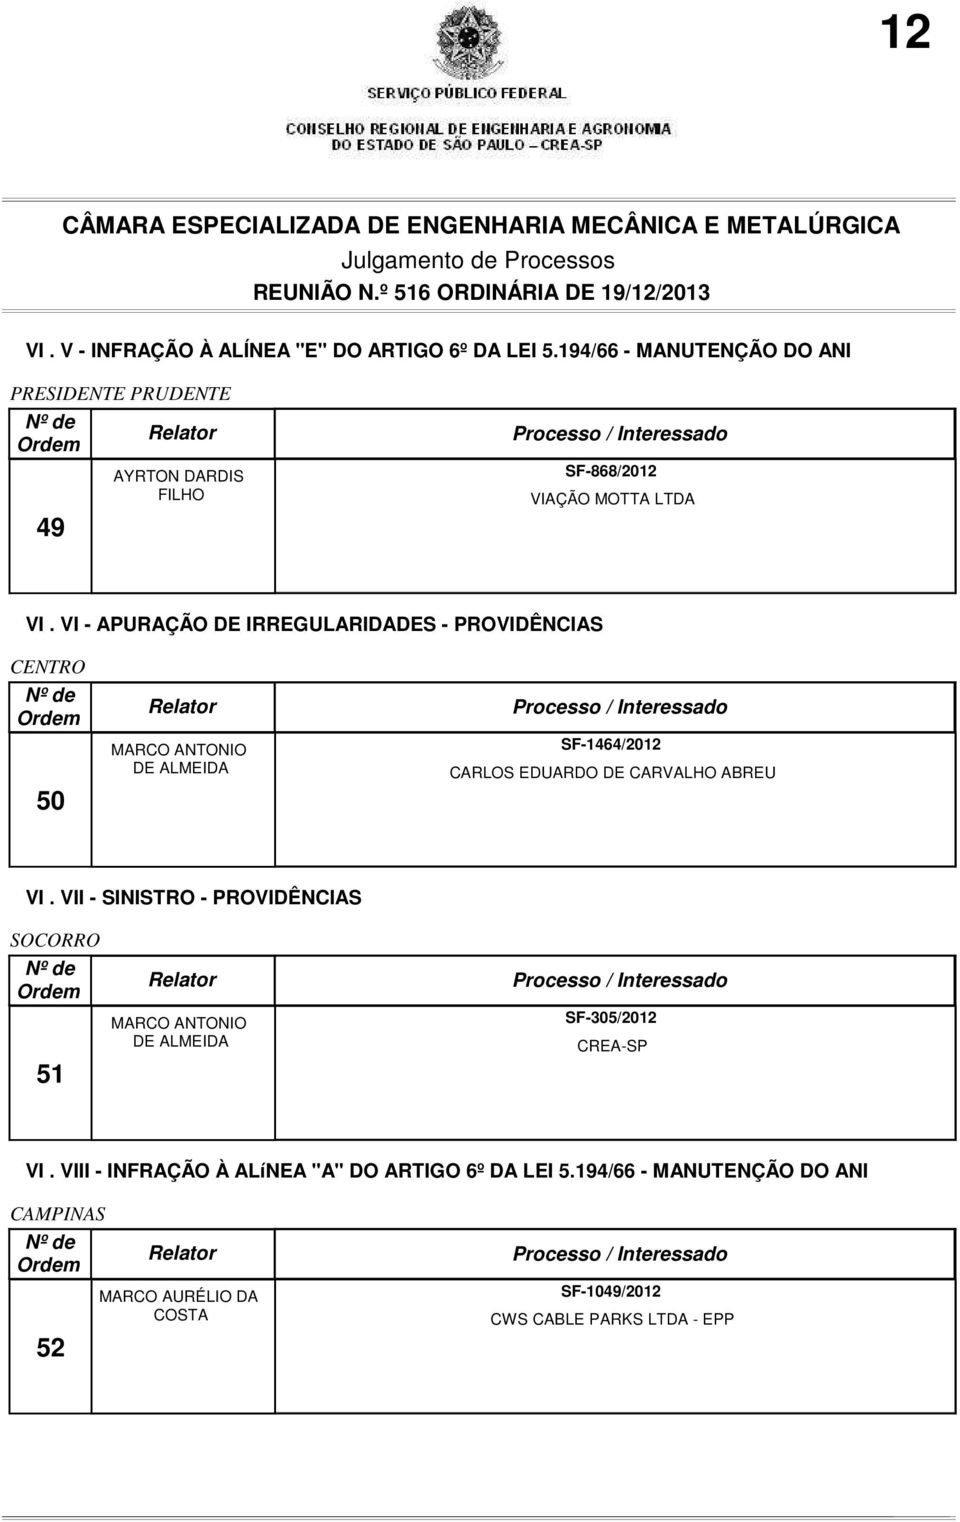 VI - APURAÇÃO DE IRREGULARIDADES - PROVIDÊNCIAS CENTRO 50 MARCO DE ALMEIDA SF-1464/2012 CARLOS EDUARDO DE CARVALHO ABREU VI.